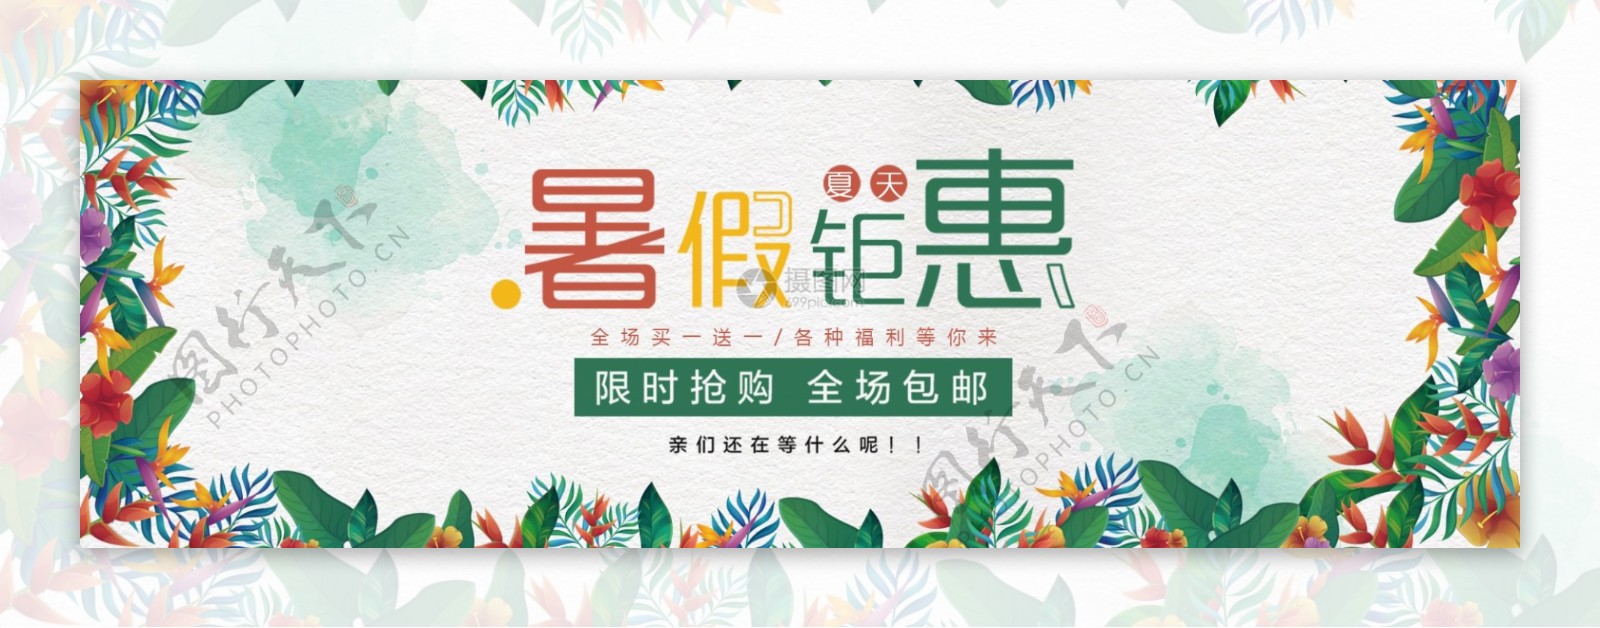 暑期培训班特惠海报banner